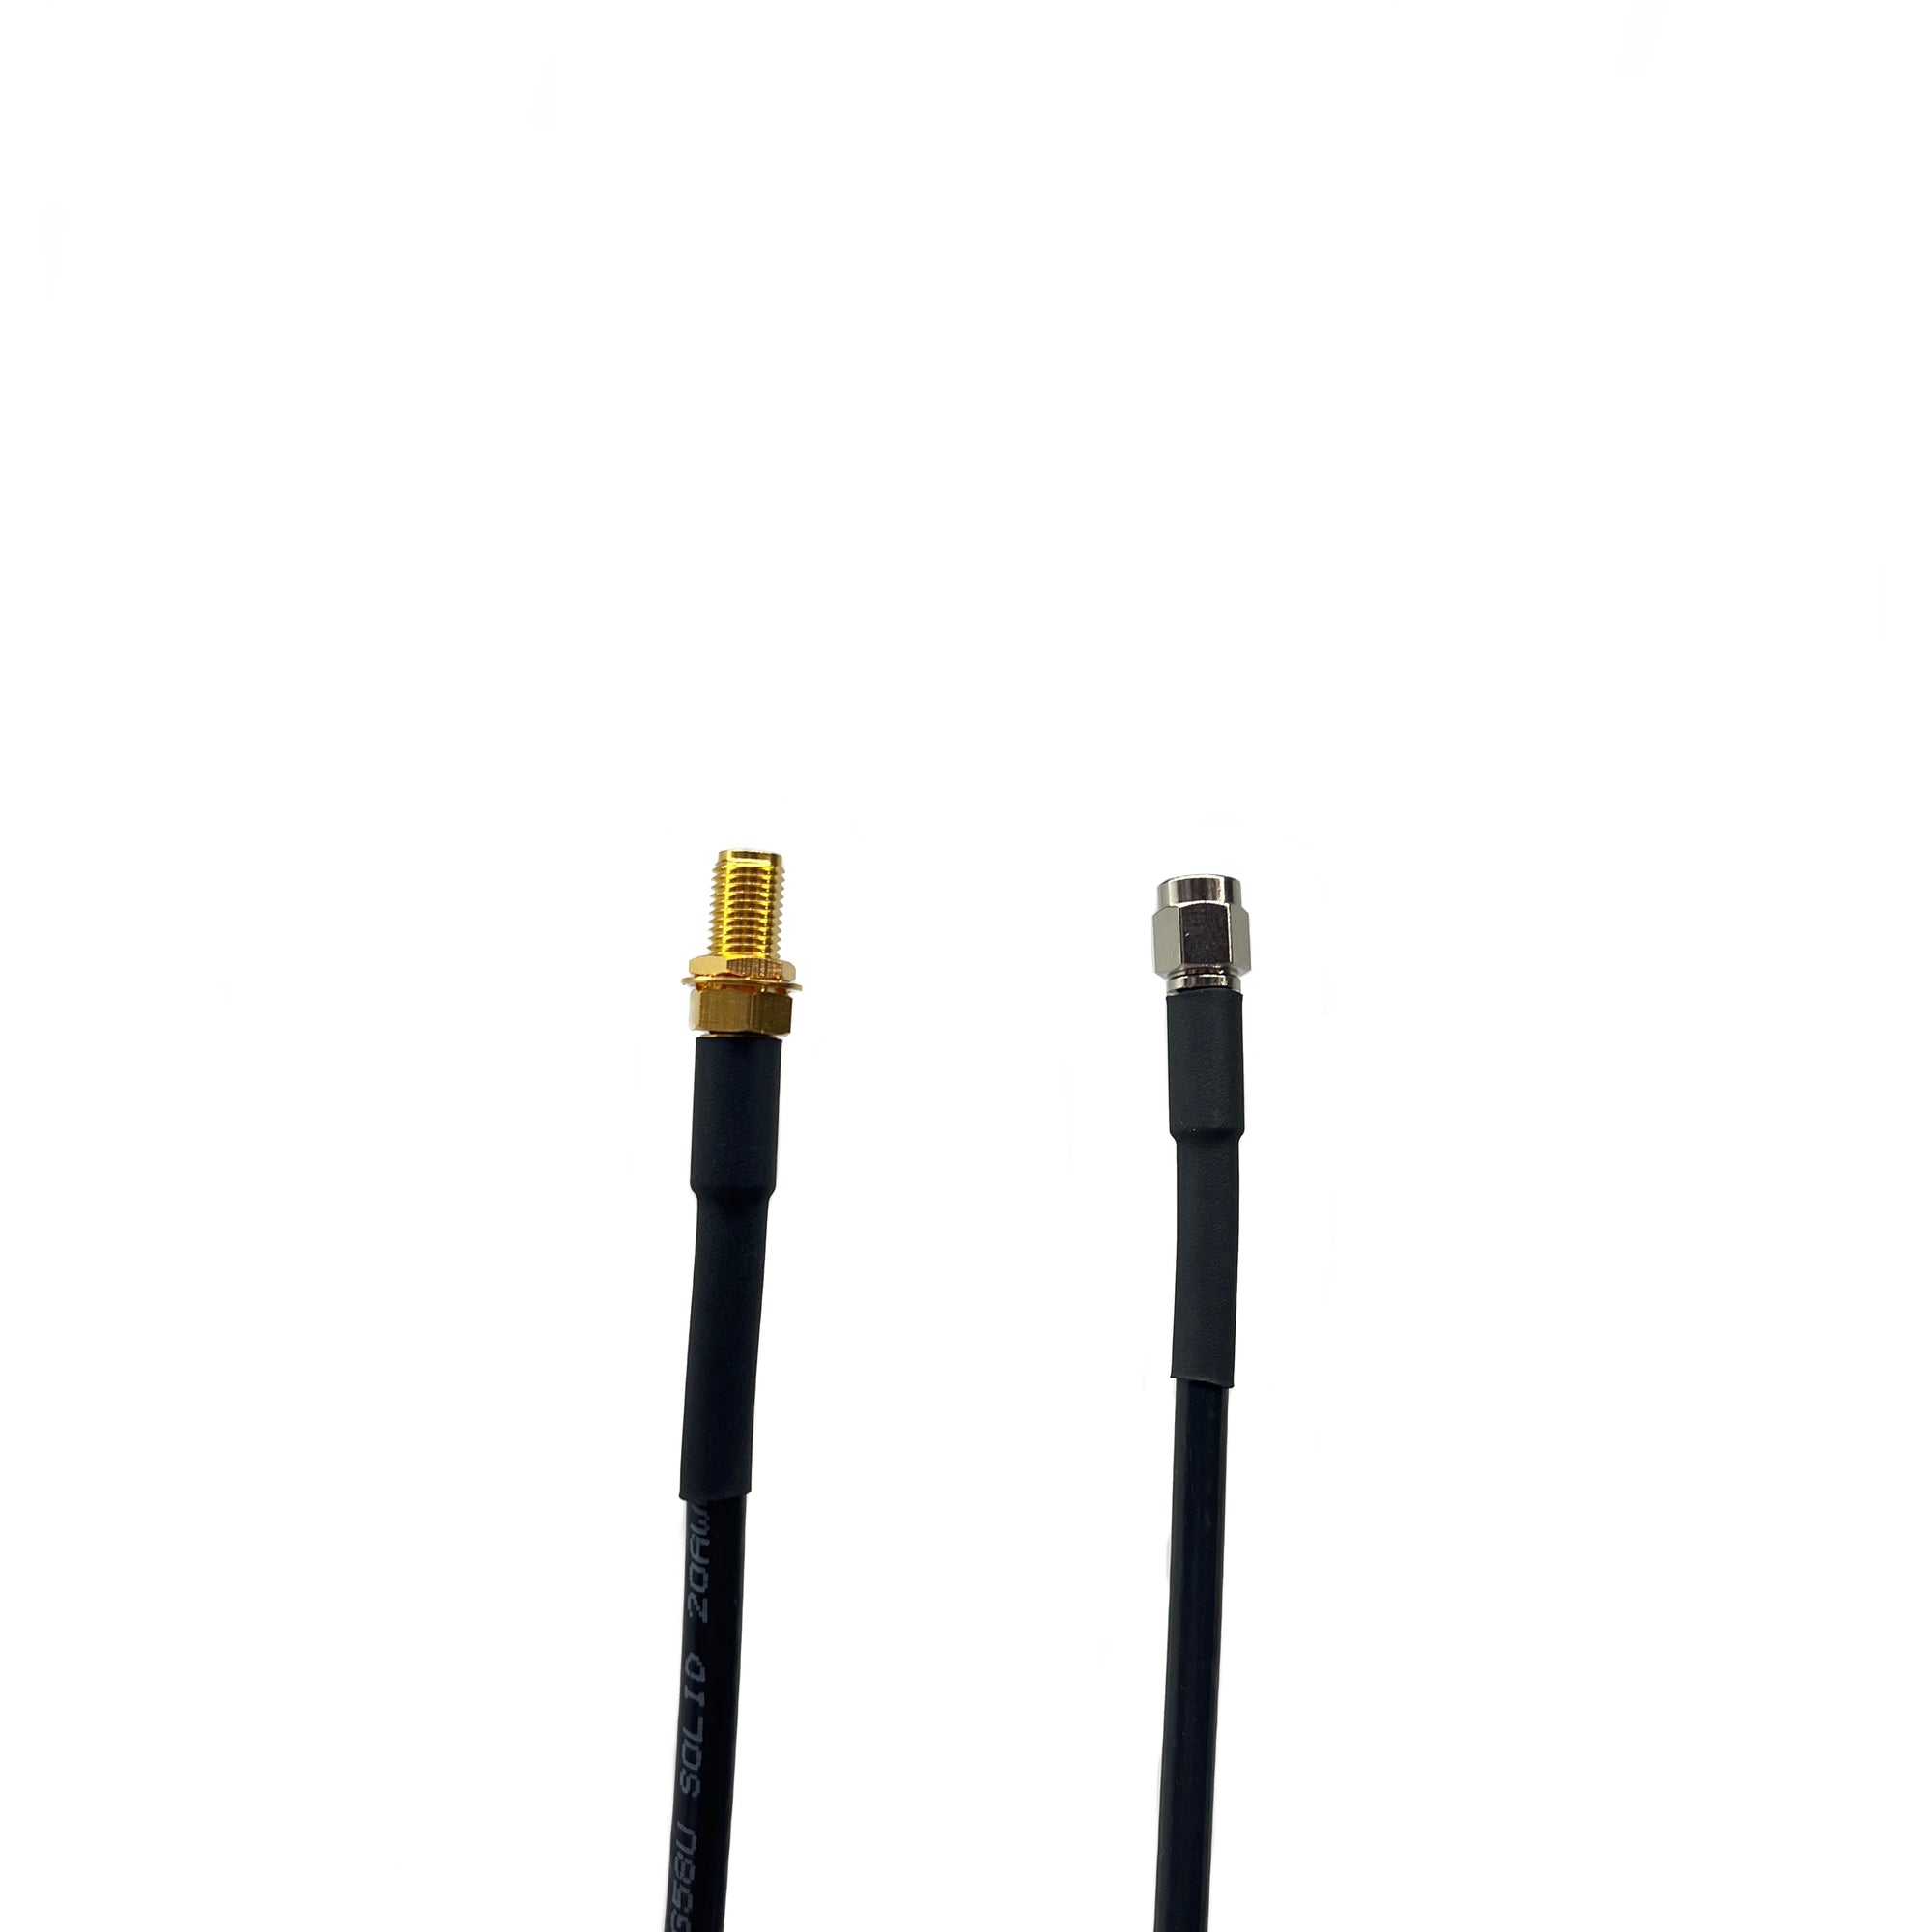 SMA Male to SMA Female RG58 50 Ohm Coax Cables